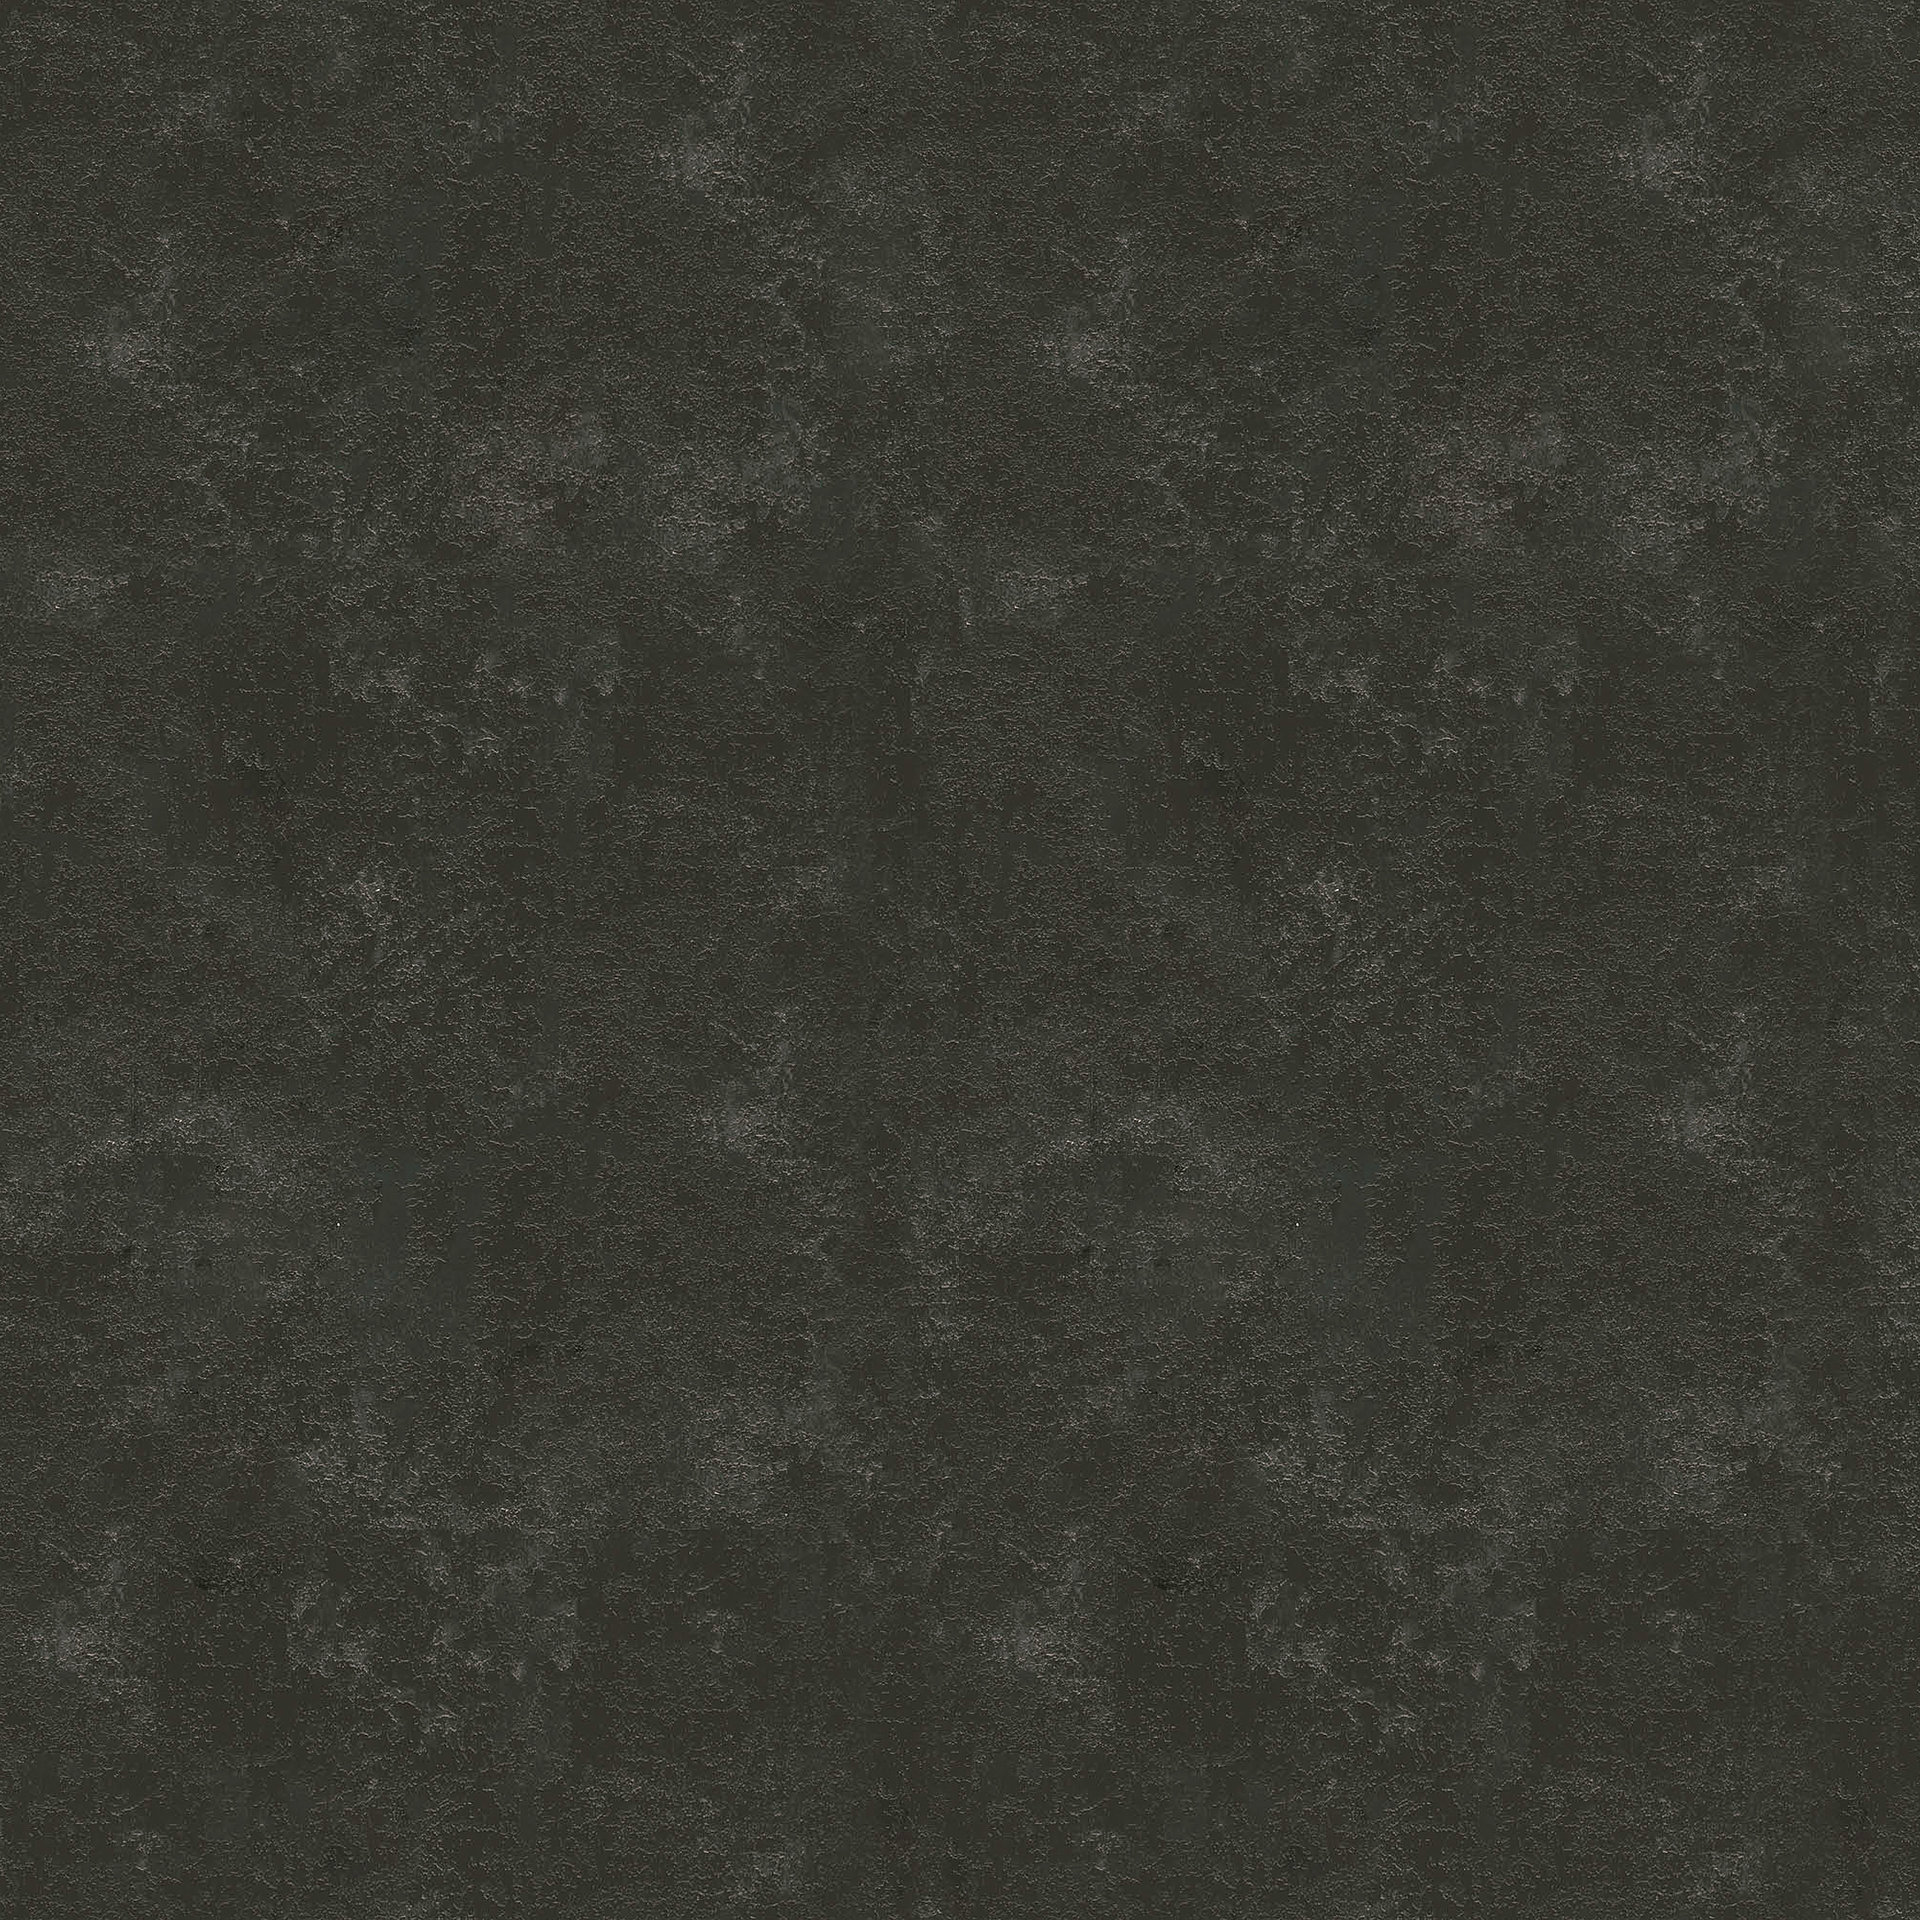 COMPACTPLATTE ARBEITSPLATTE mit schwarzem Kern F 76054 GR Metallic Brown  12mm - 4100 x 640